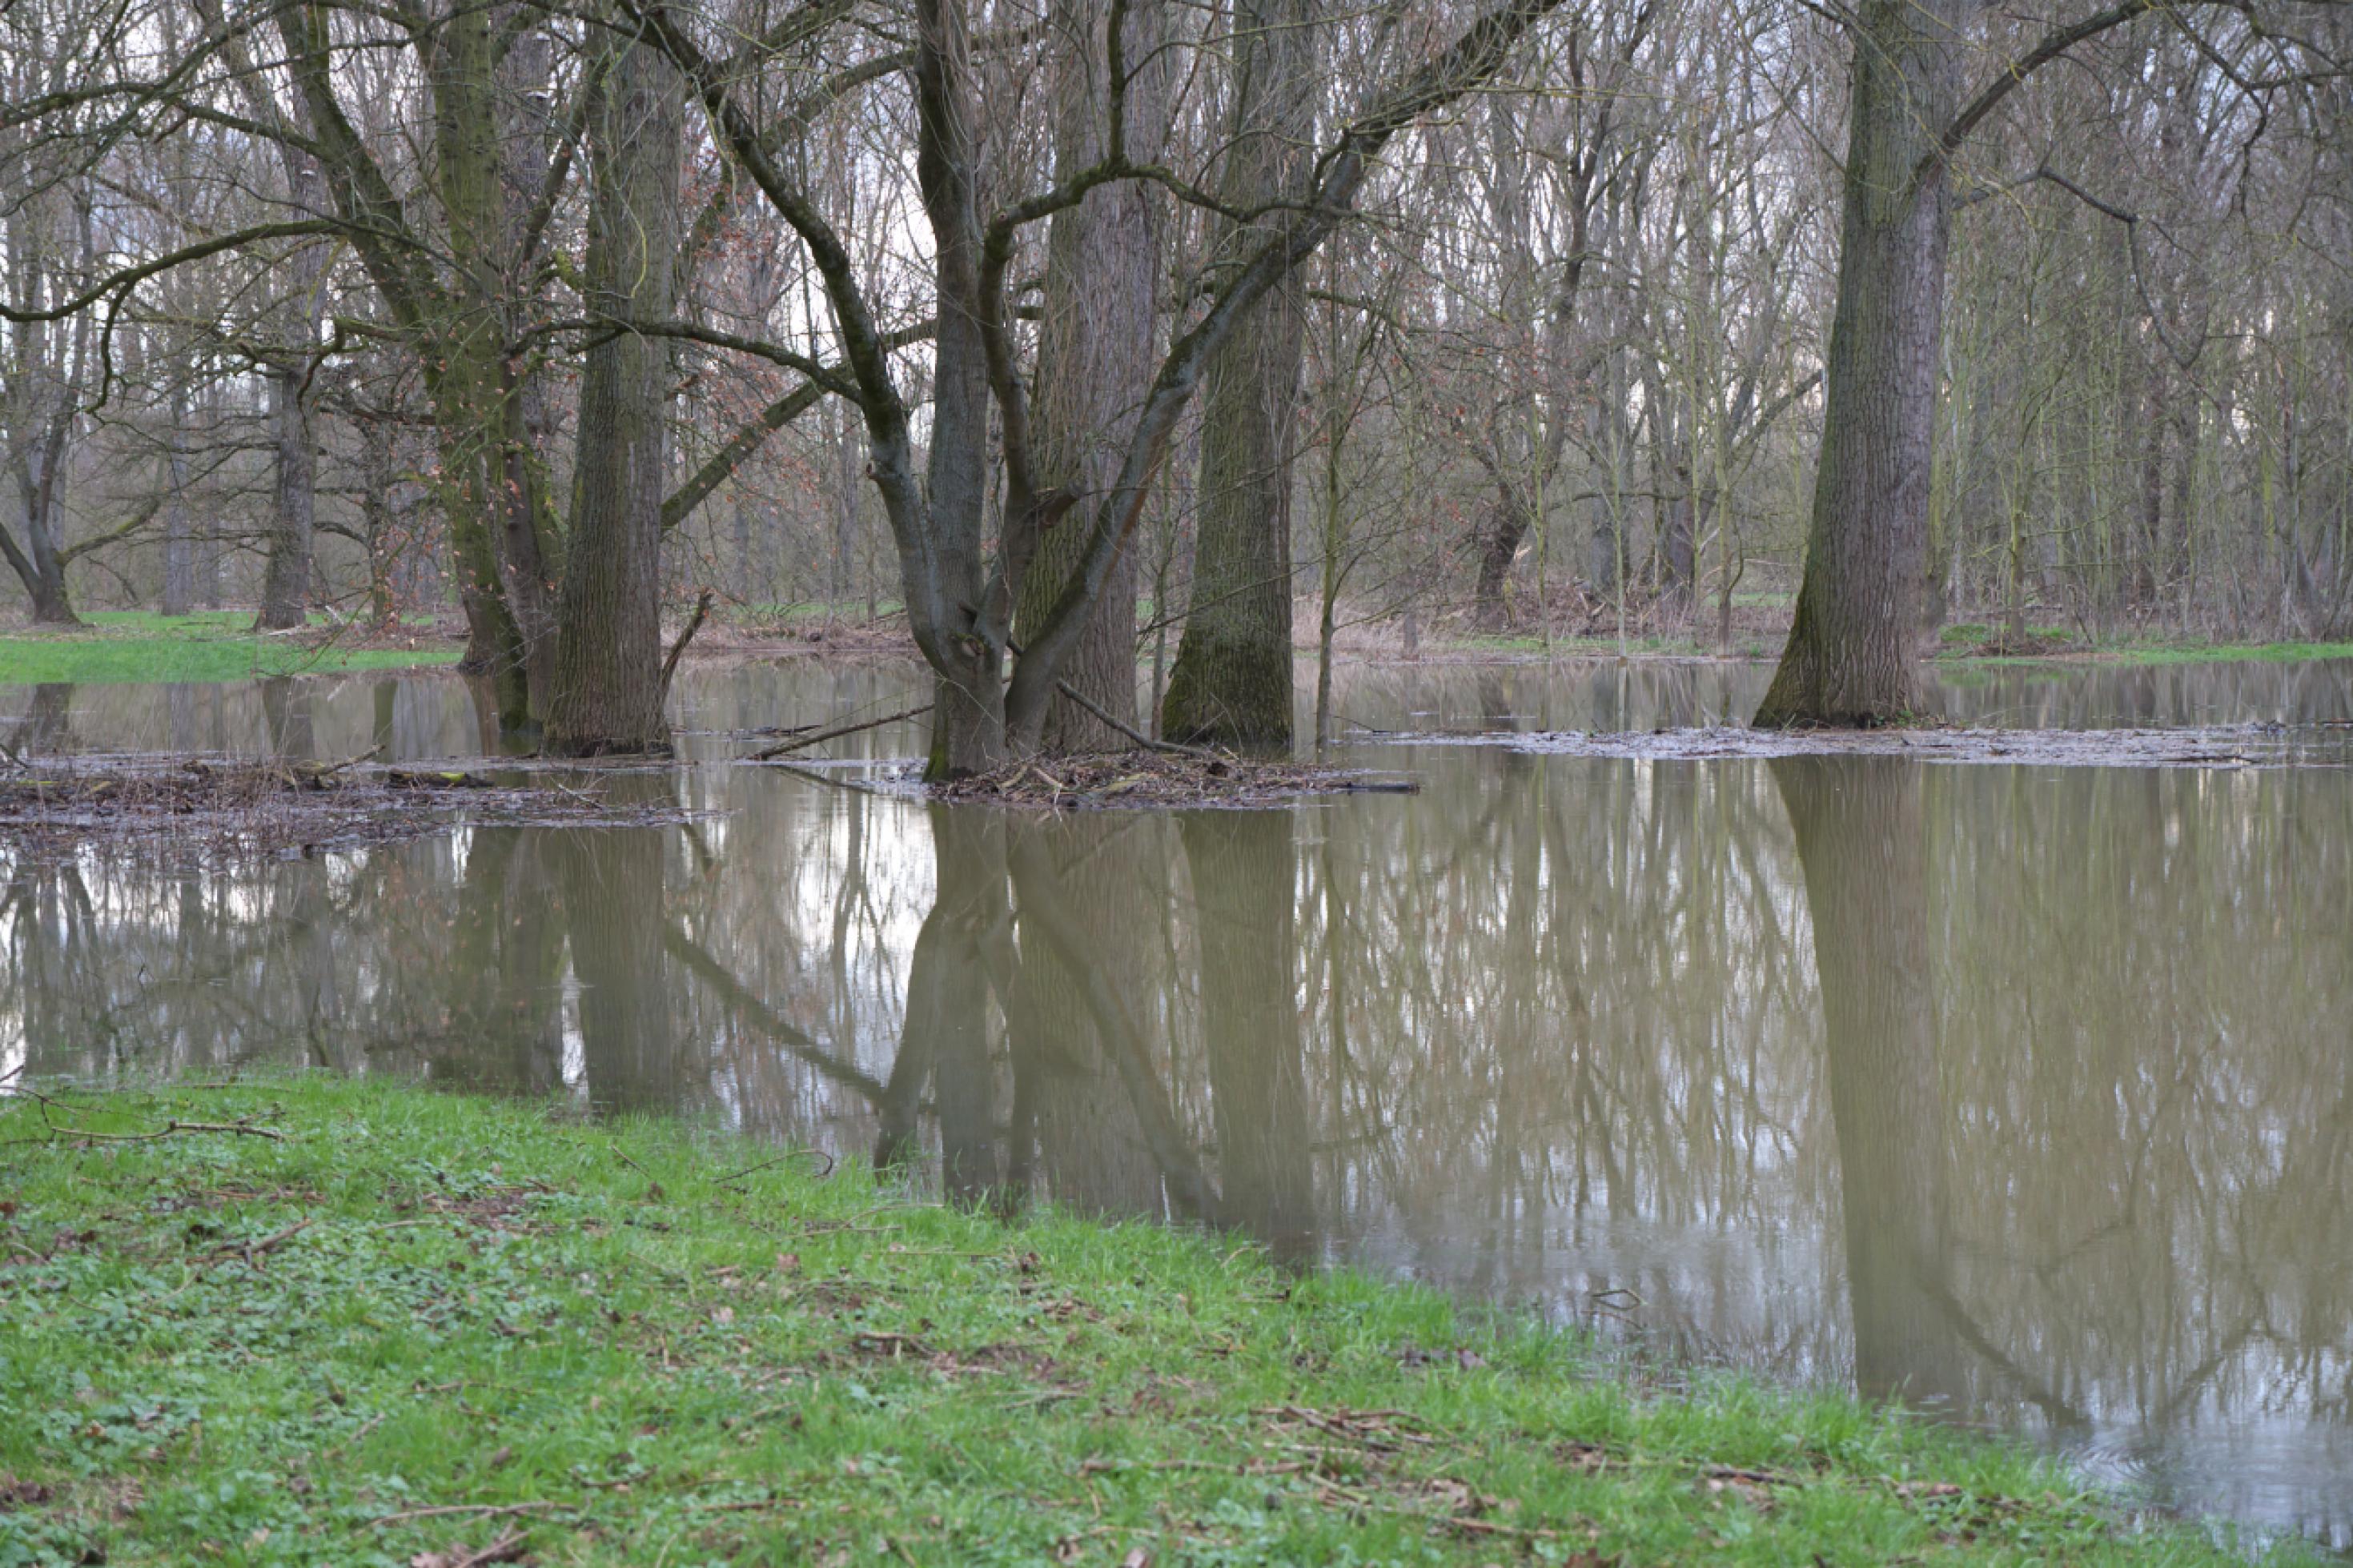 Bäume ohne Laub stehen auf einer überschwemmten Wiese und spiegeln sich im bräunlichen Wasser.